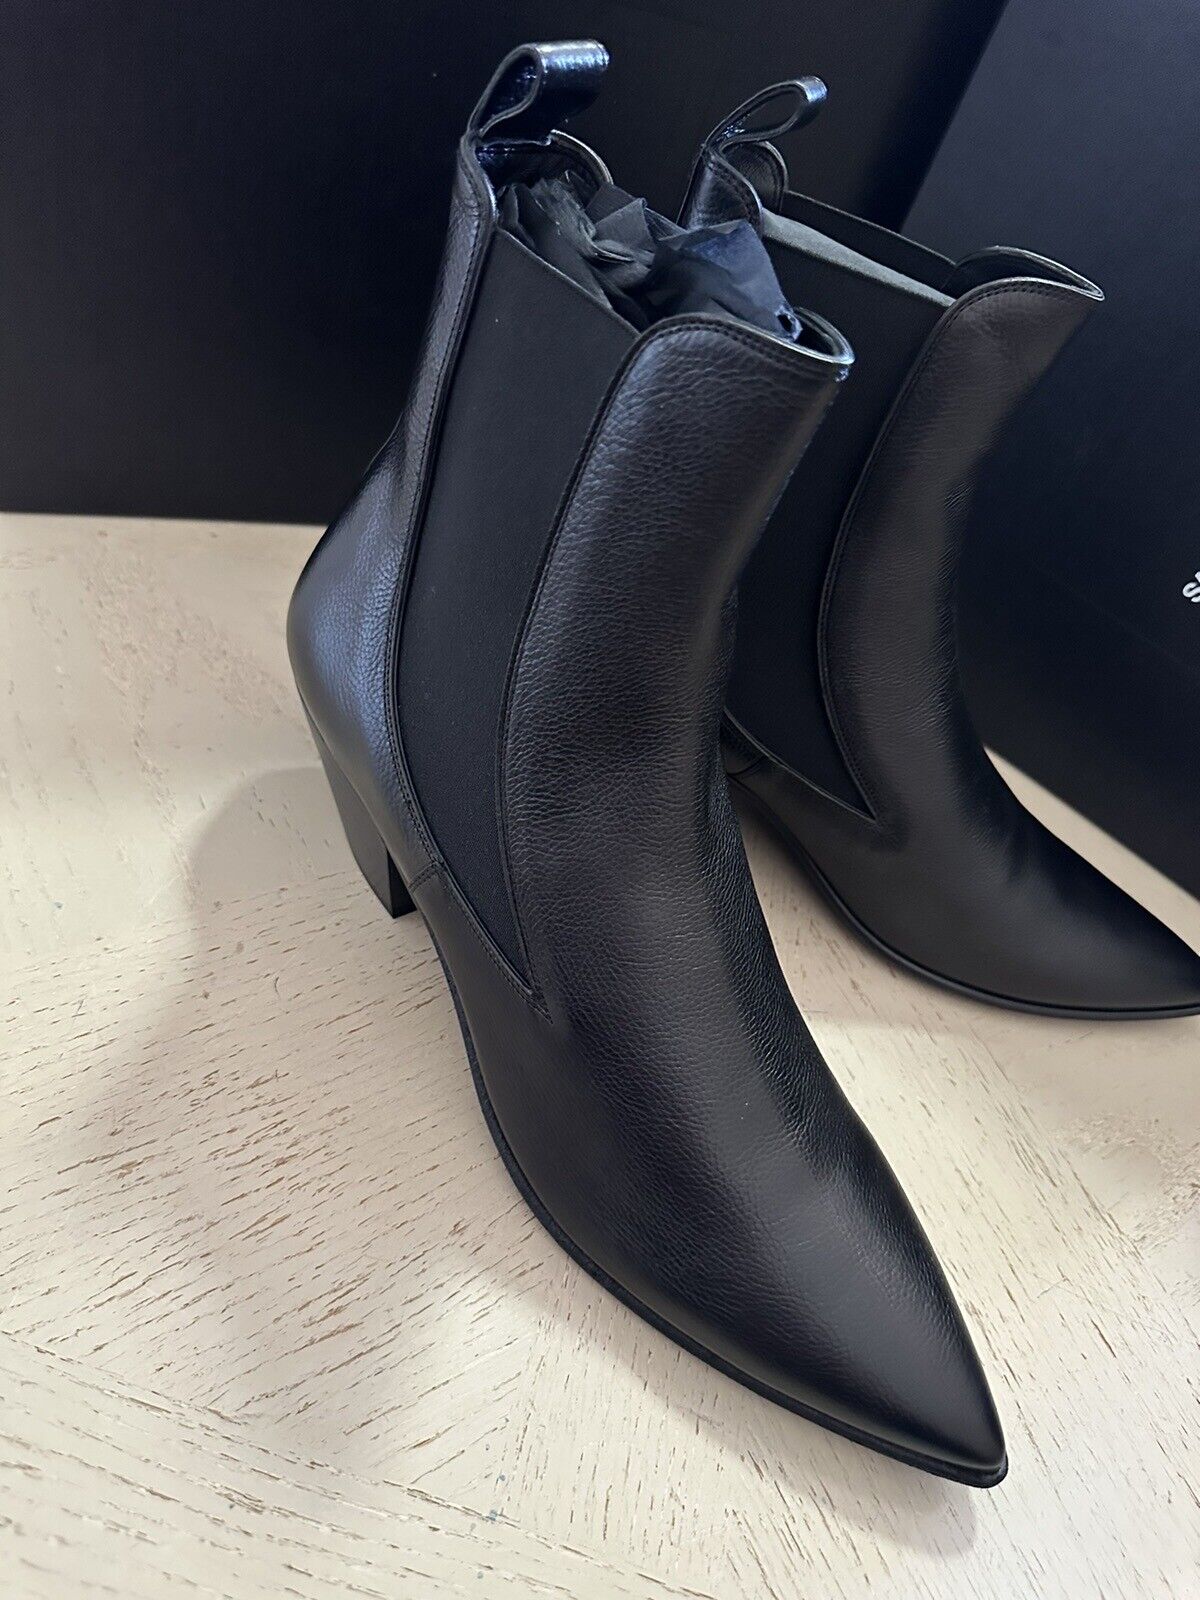 NIB $1195 Saint Laurent Men’s Leather Boots Shoes Black 9.5 US/42.5 Eu 685837